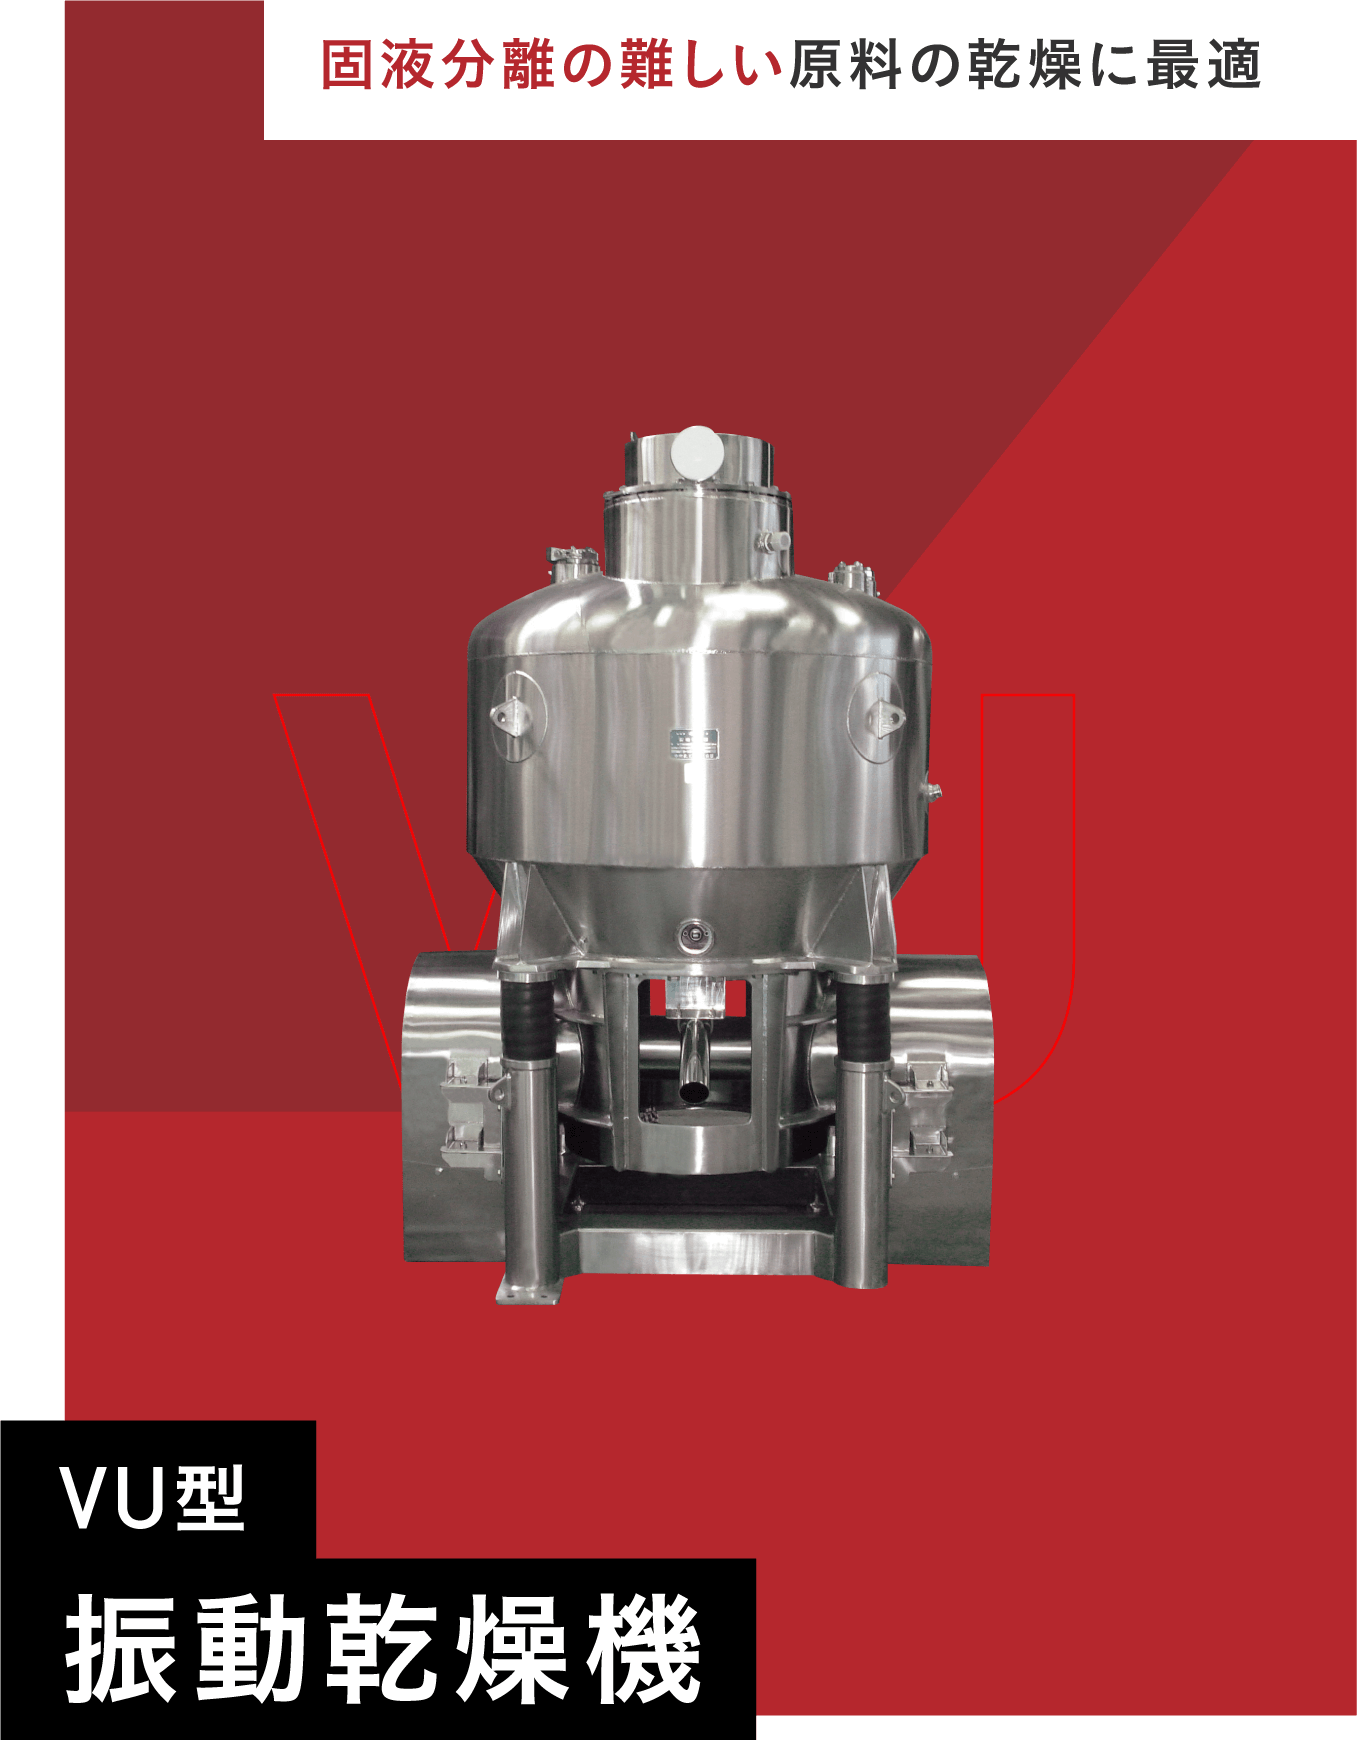 VU型振動乾燥機の画像